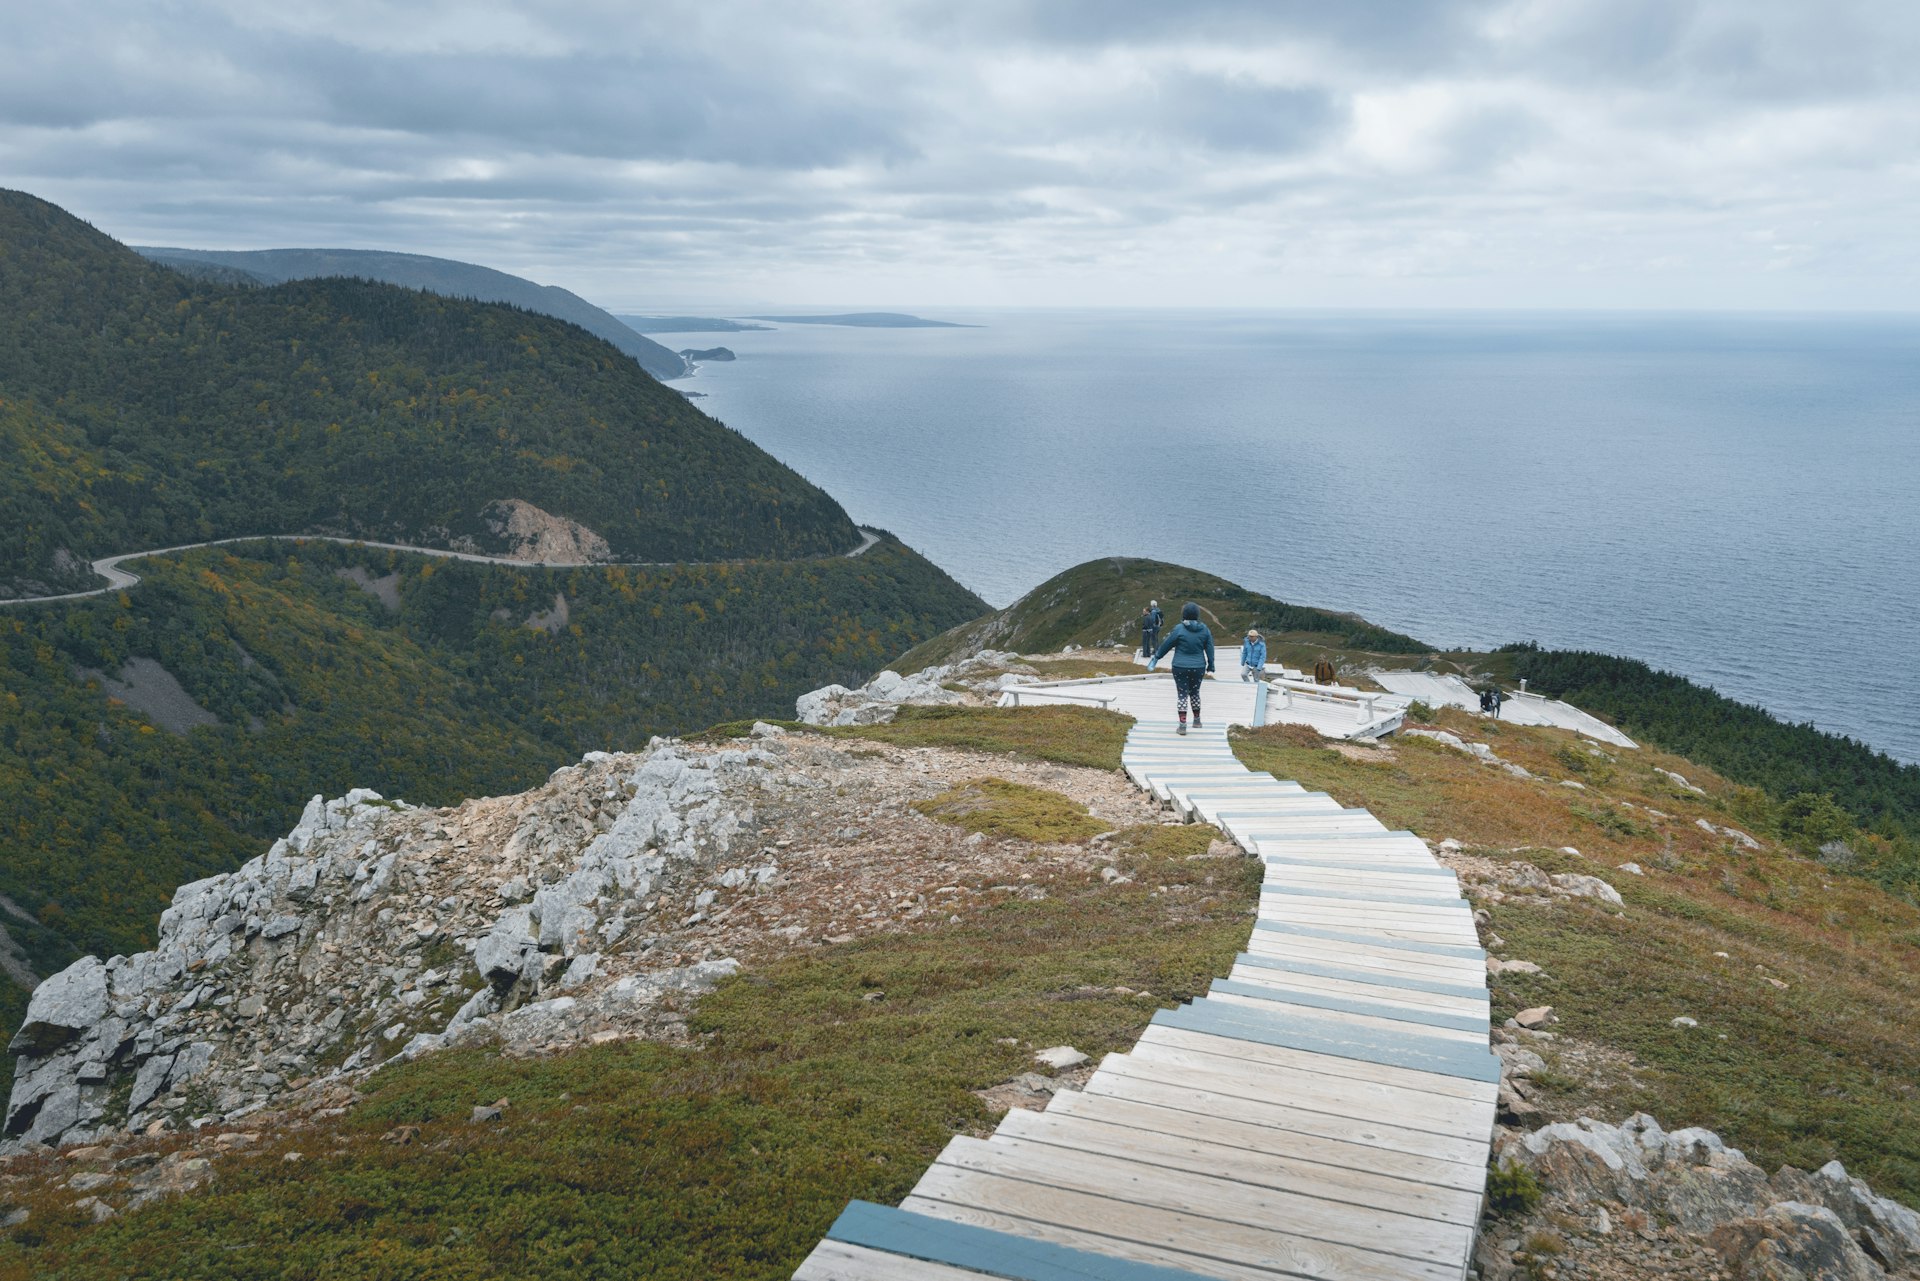 Pessoas caminham pela Skyline Trail acima do oceano no Parque Nacional Cape Breton Highlands, Nova Escócia, Canadá